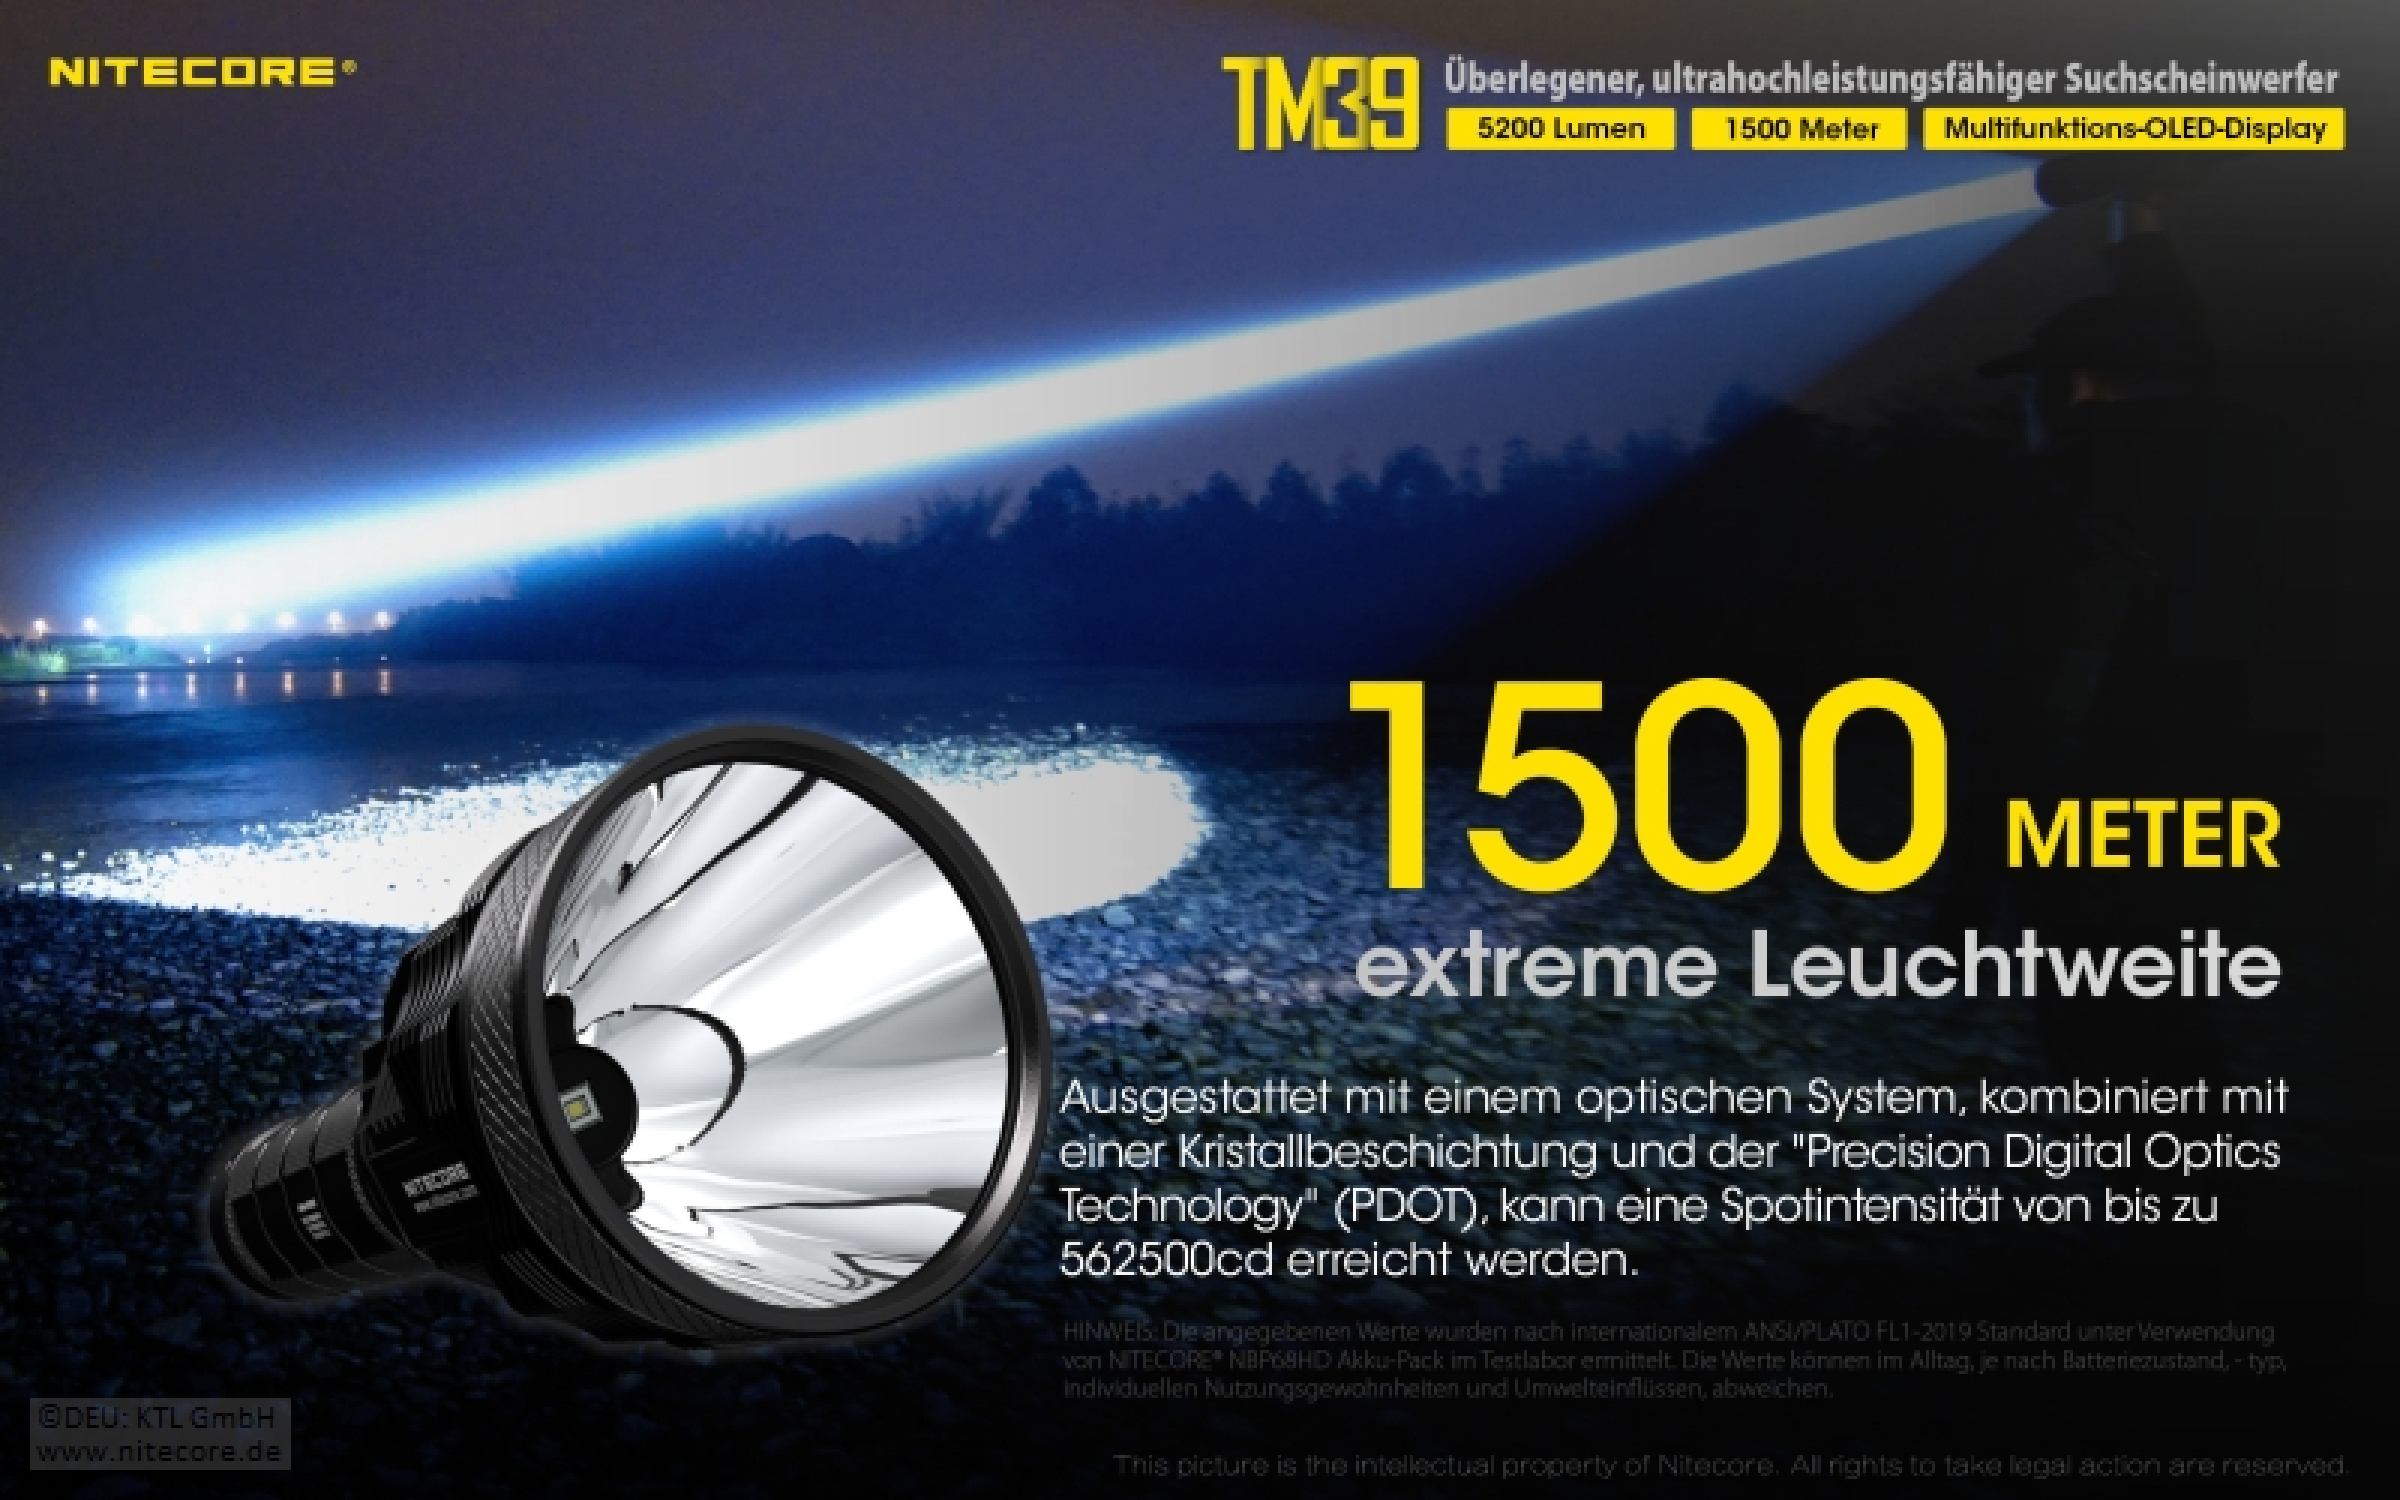 Nitecore Pro Taschenlampe TM39 - 5200 Lumen